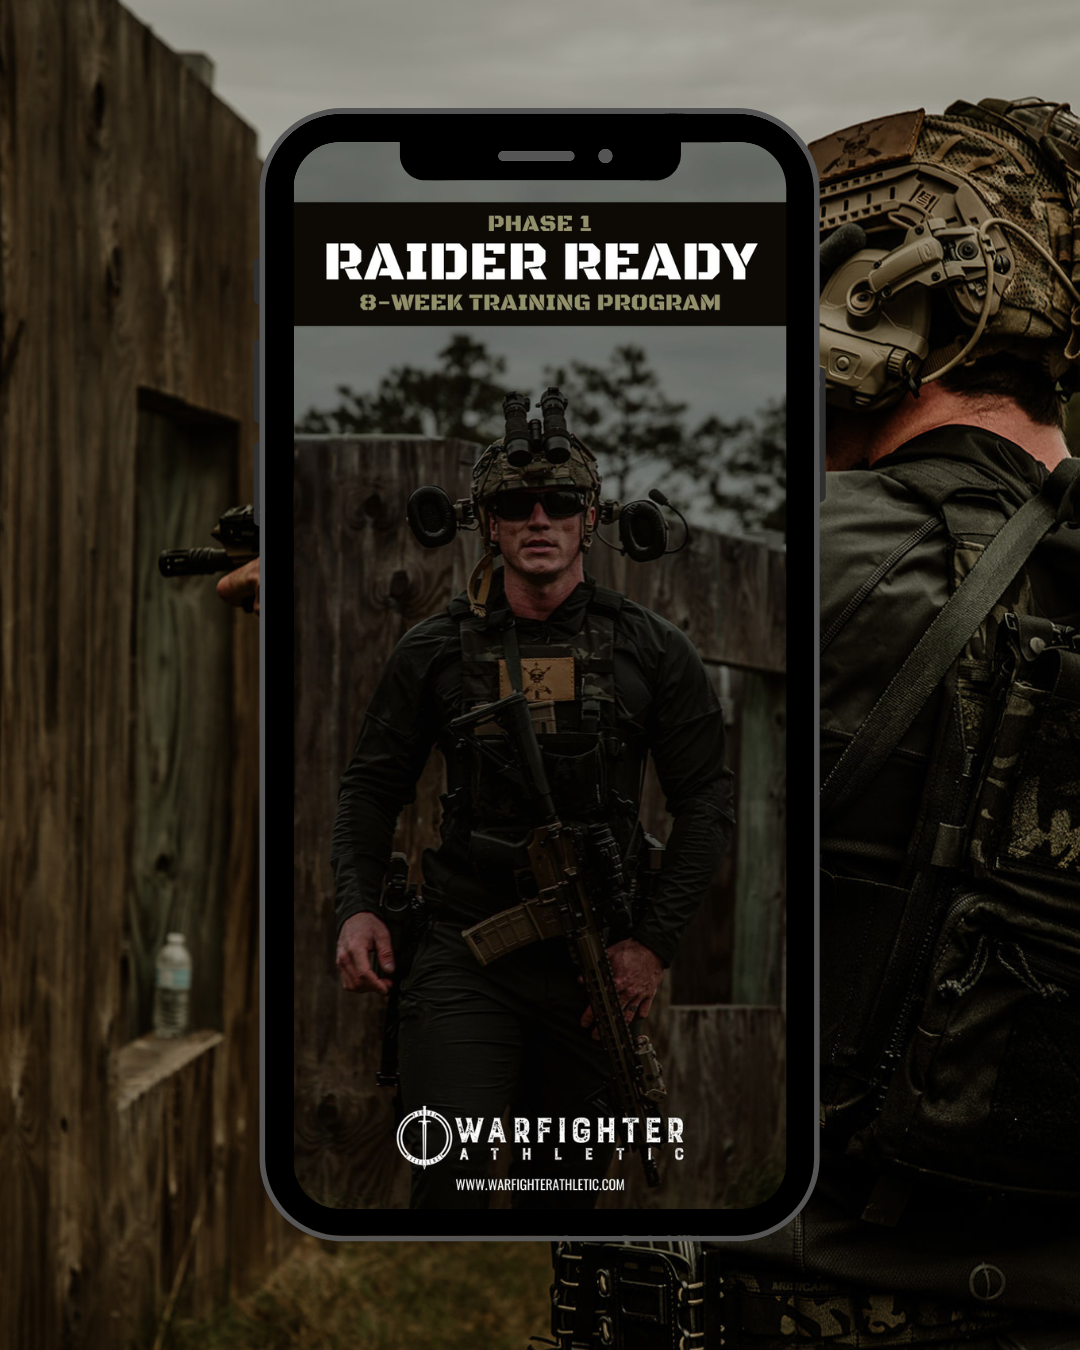 Phase 1 - Raider Ready Program